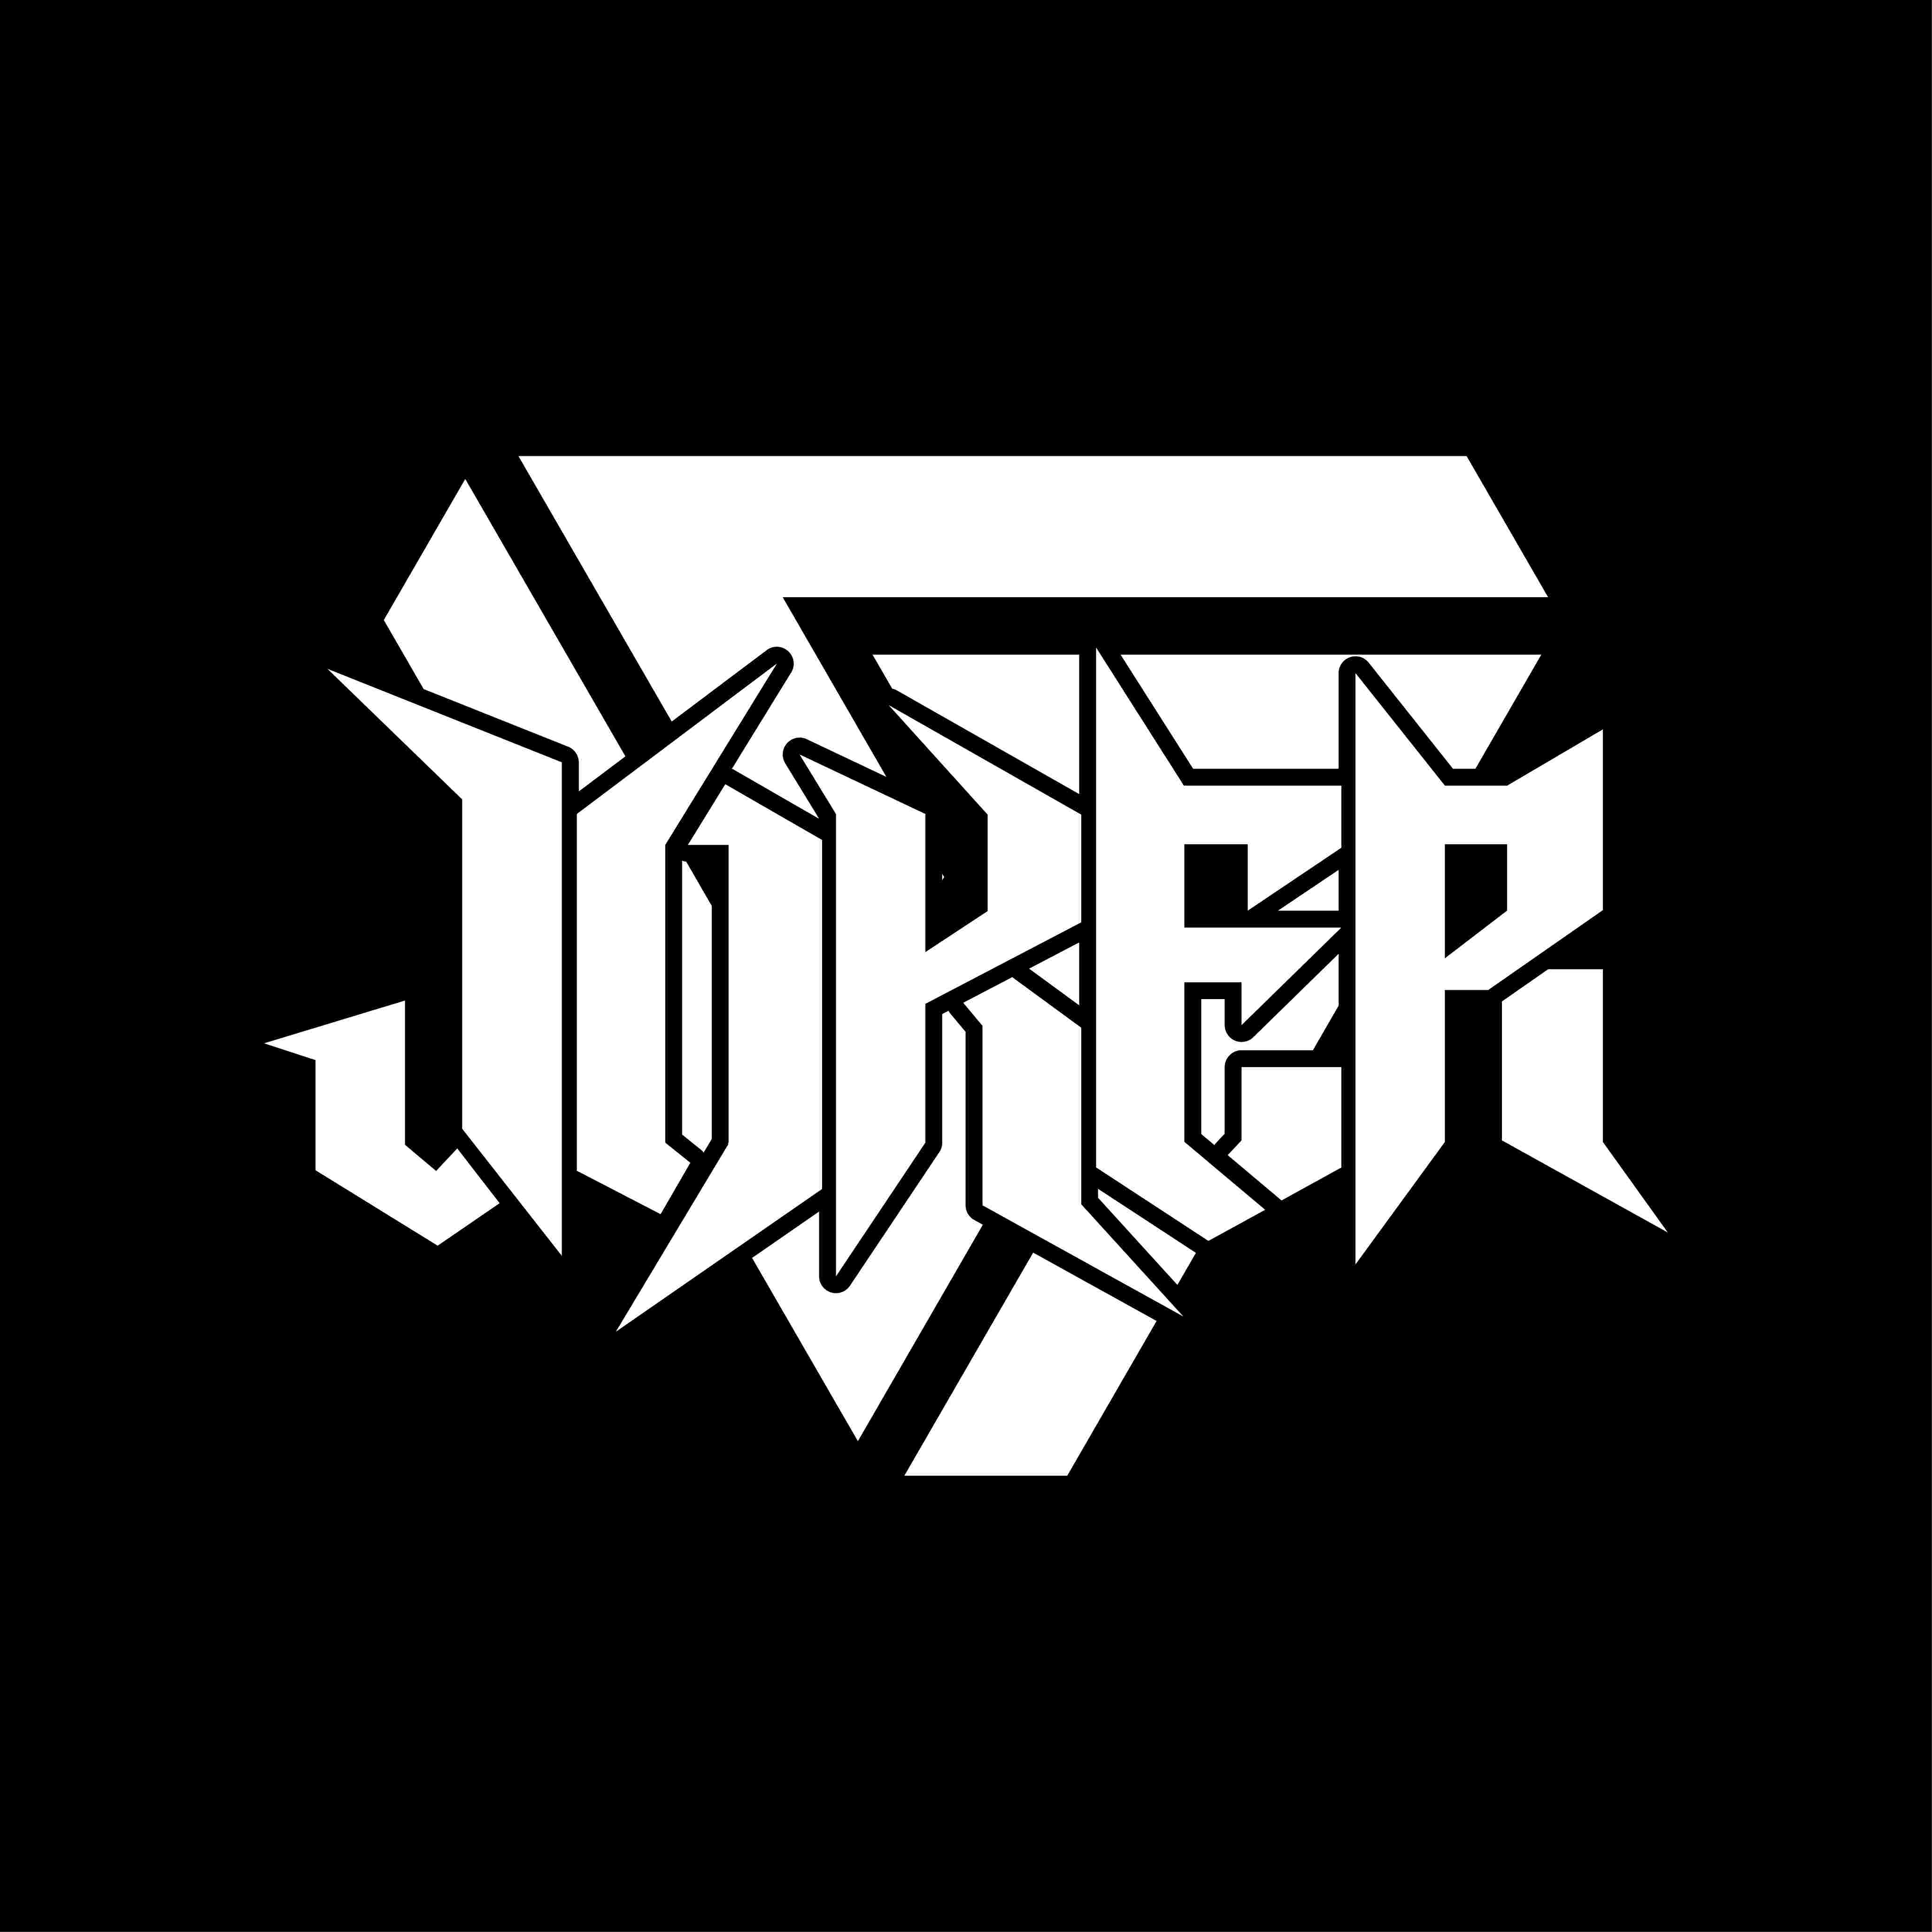 [03.03] 西安人气DJ joker 12-1点思路